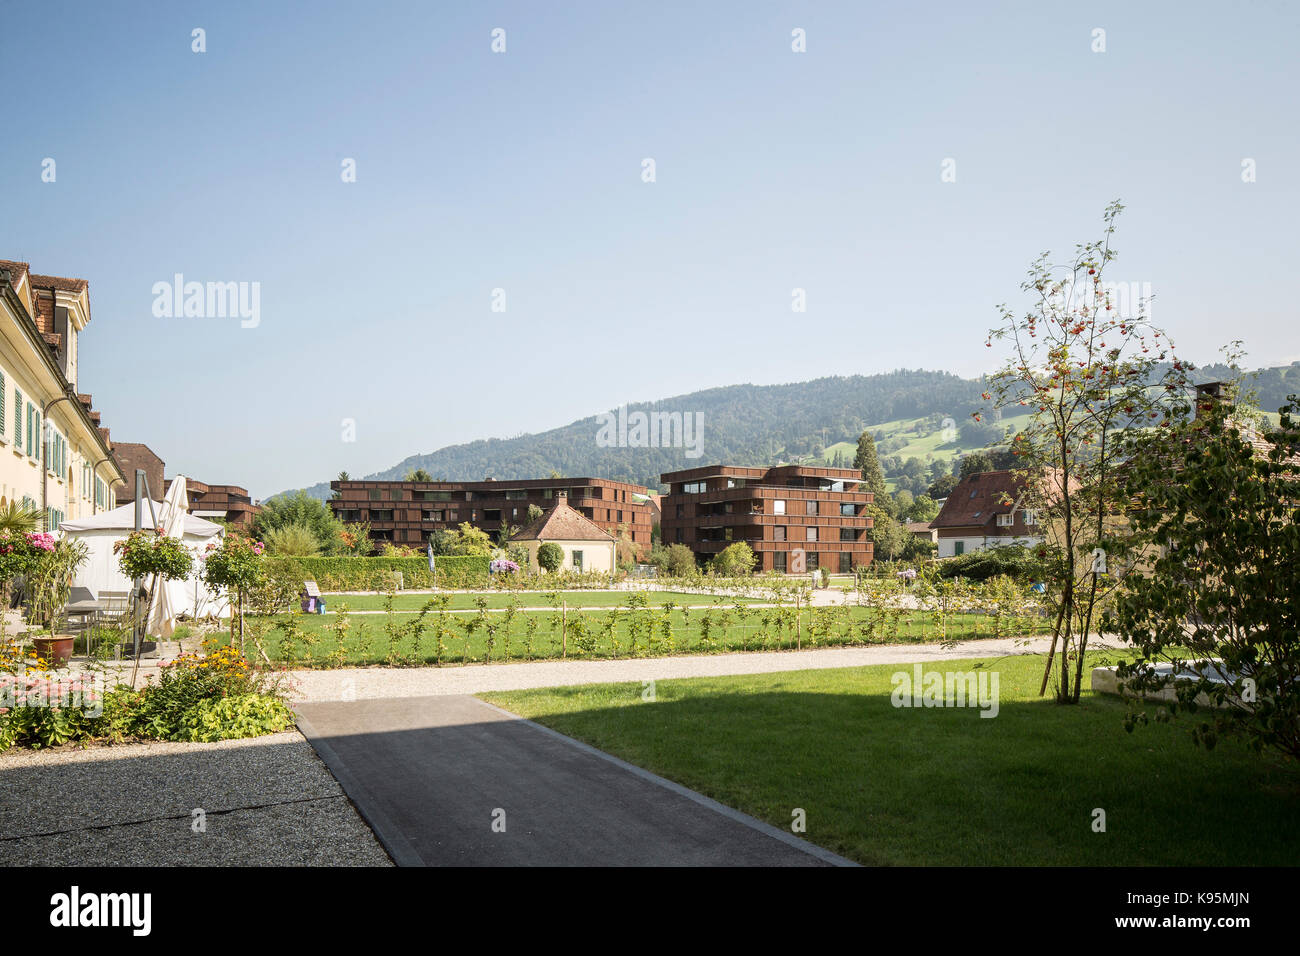 Vue lointaine sur vert paysagé. Offres et demandes de logement, Malters Malters, Suisse. Architecte : Diener & Diener, 2016. Banque D'Images